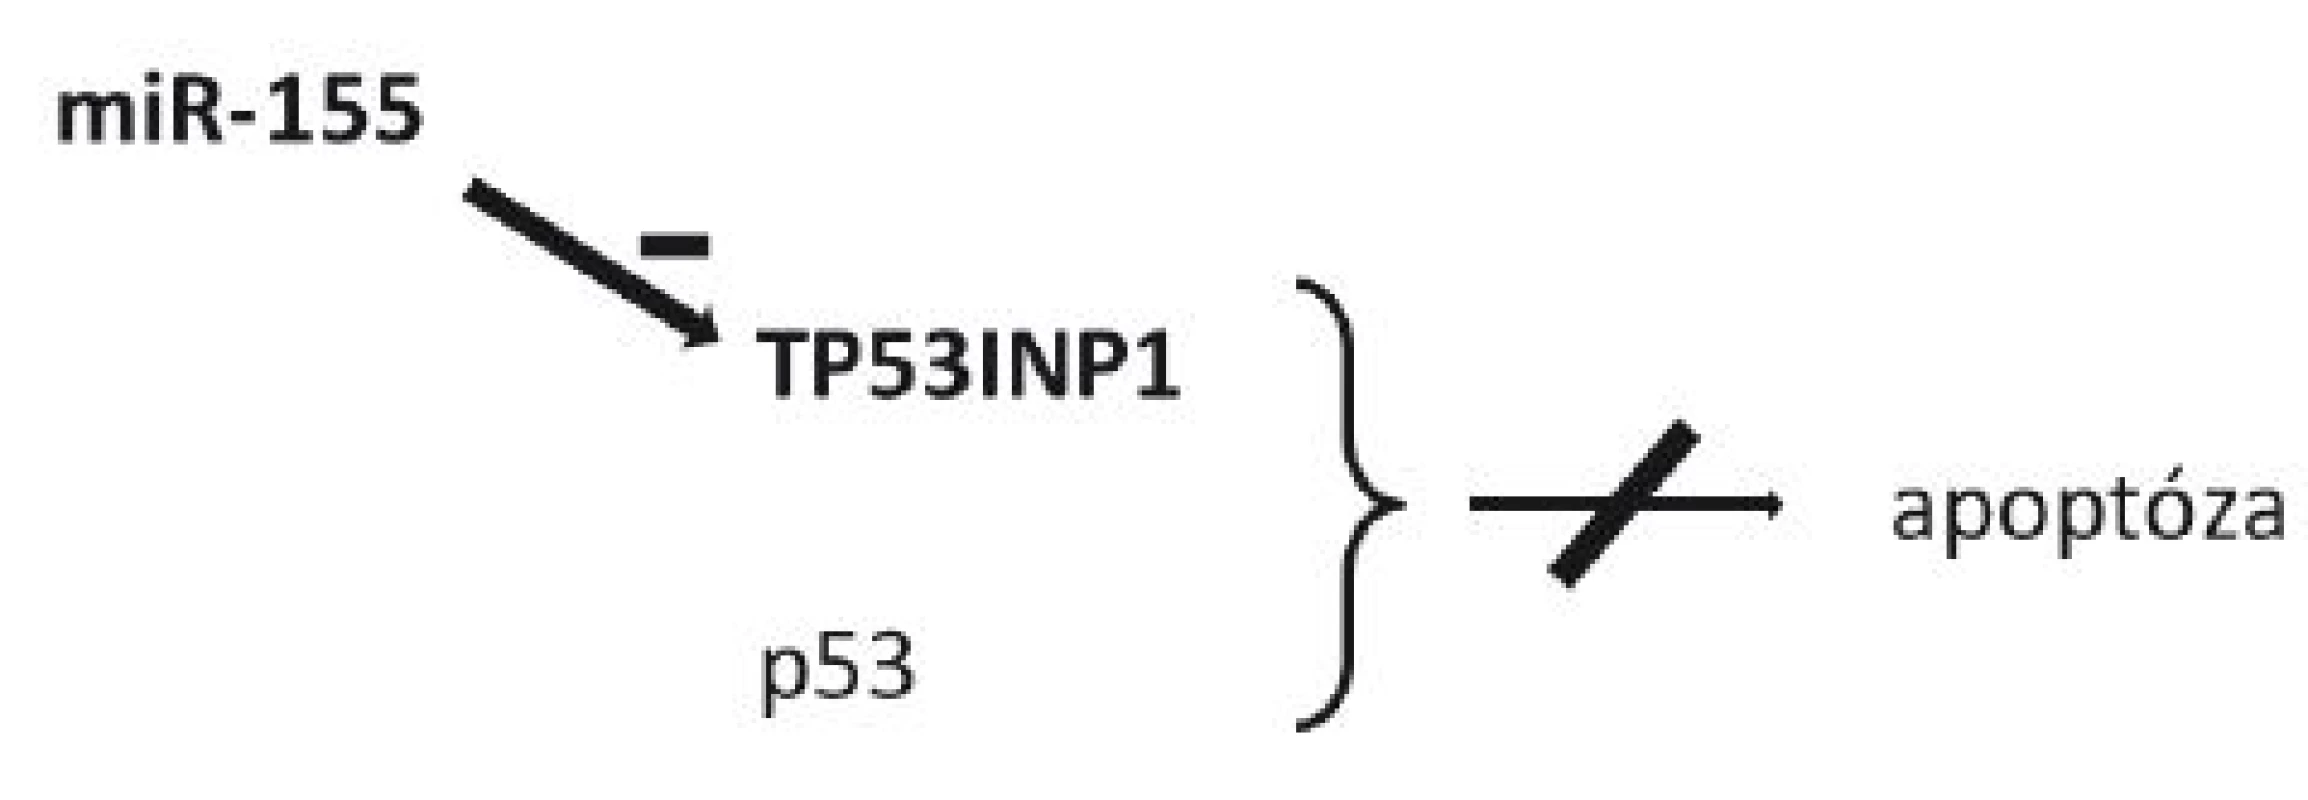 Schéma působení miR-155 a její role v inhibici apoptózy
TP53INP1 – tumor protein 53-induced nuclear protein 1 